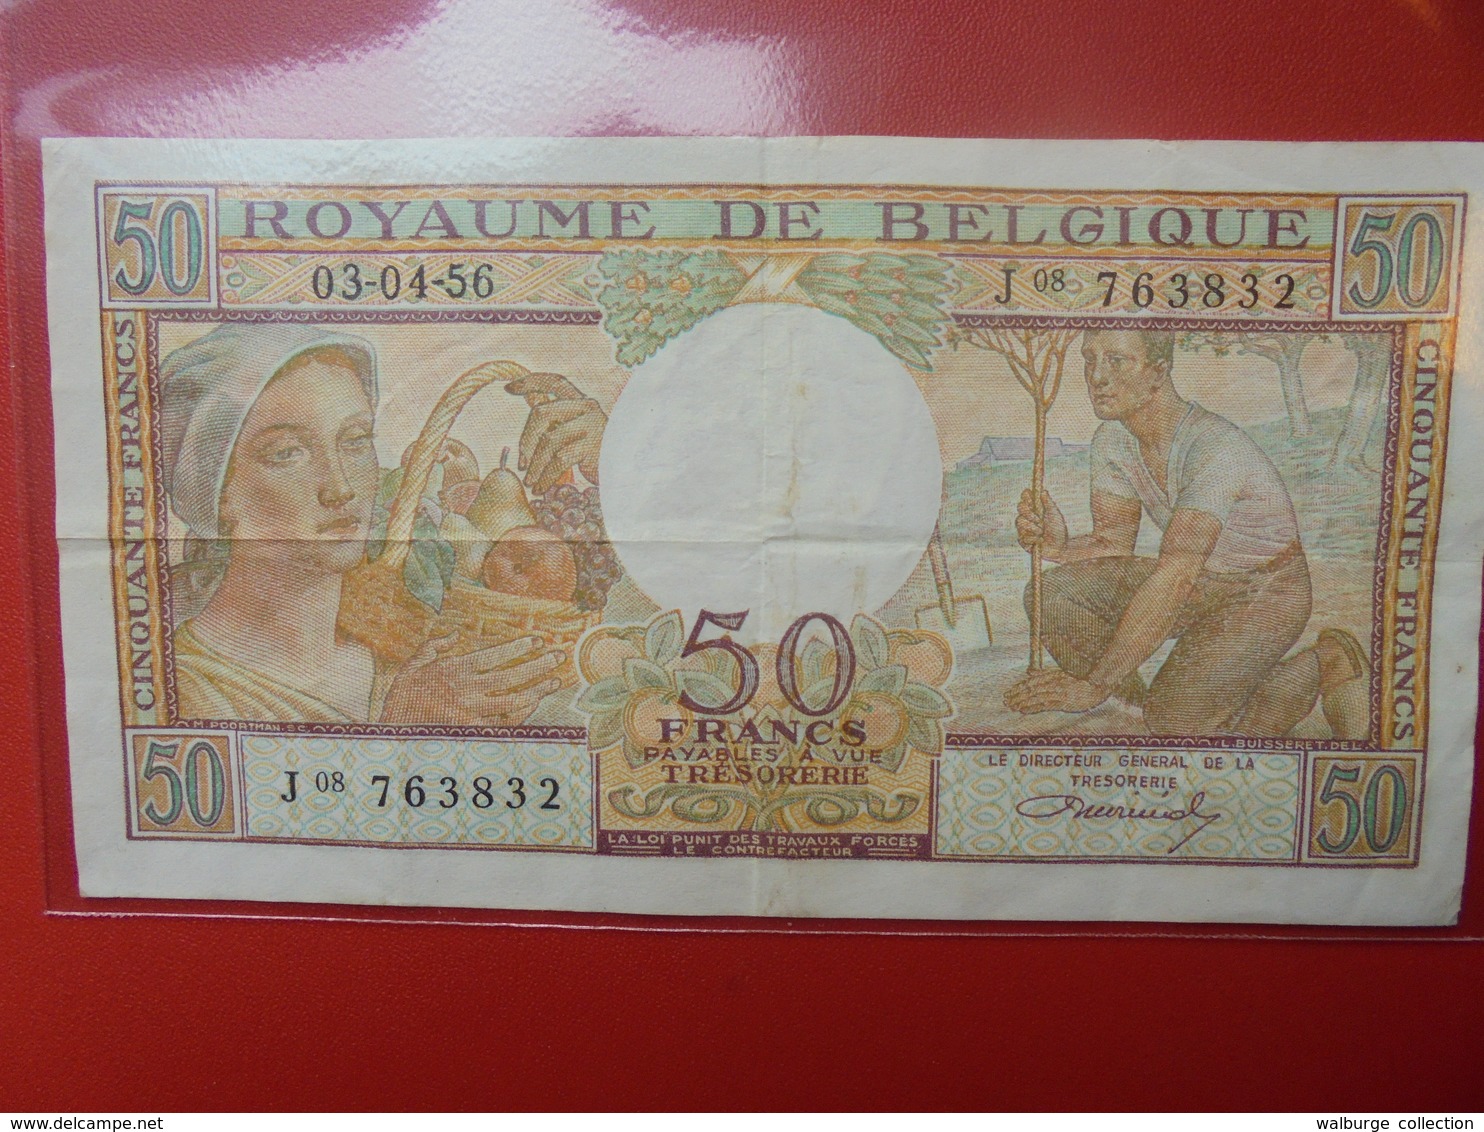 BELGIQUE 50 FRANCS 1956 CIRCULER - 50 Francs